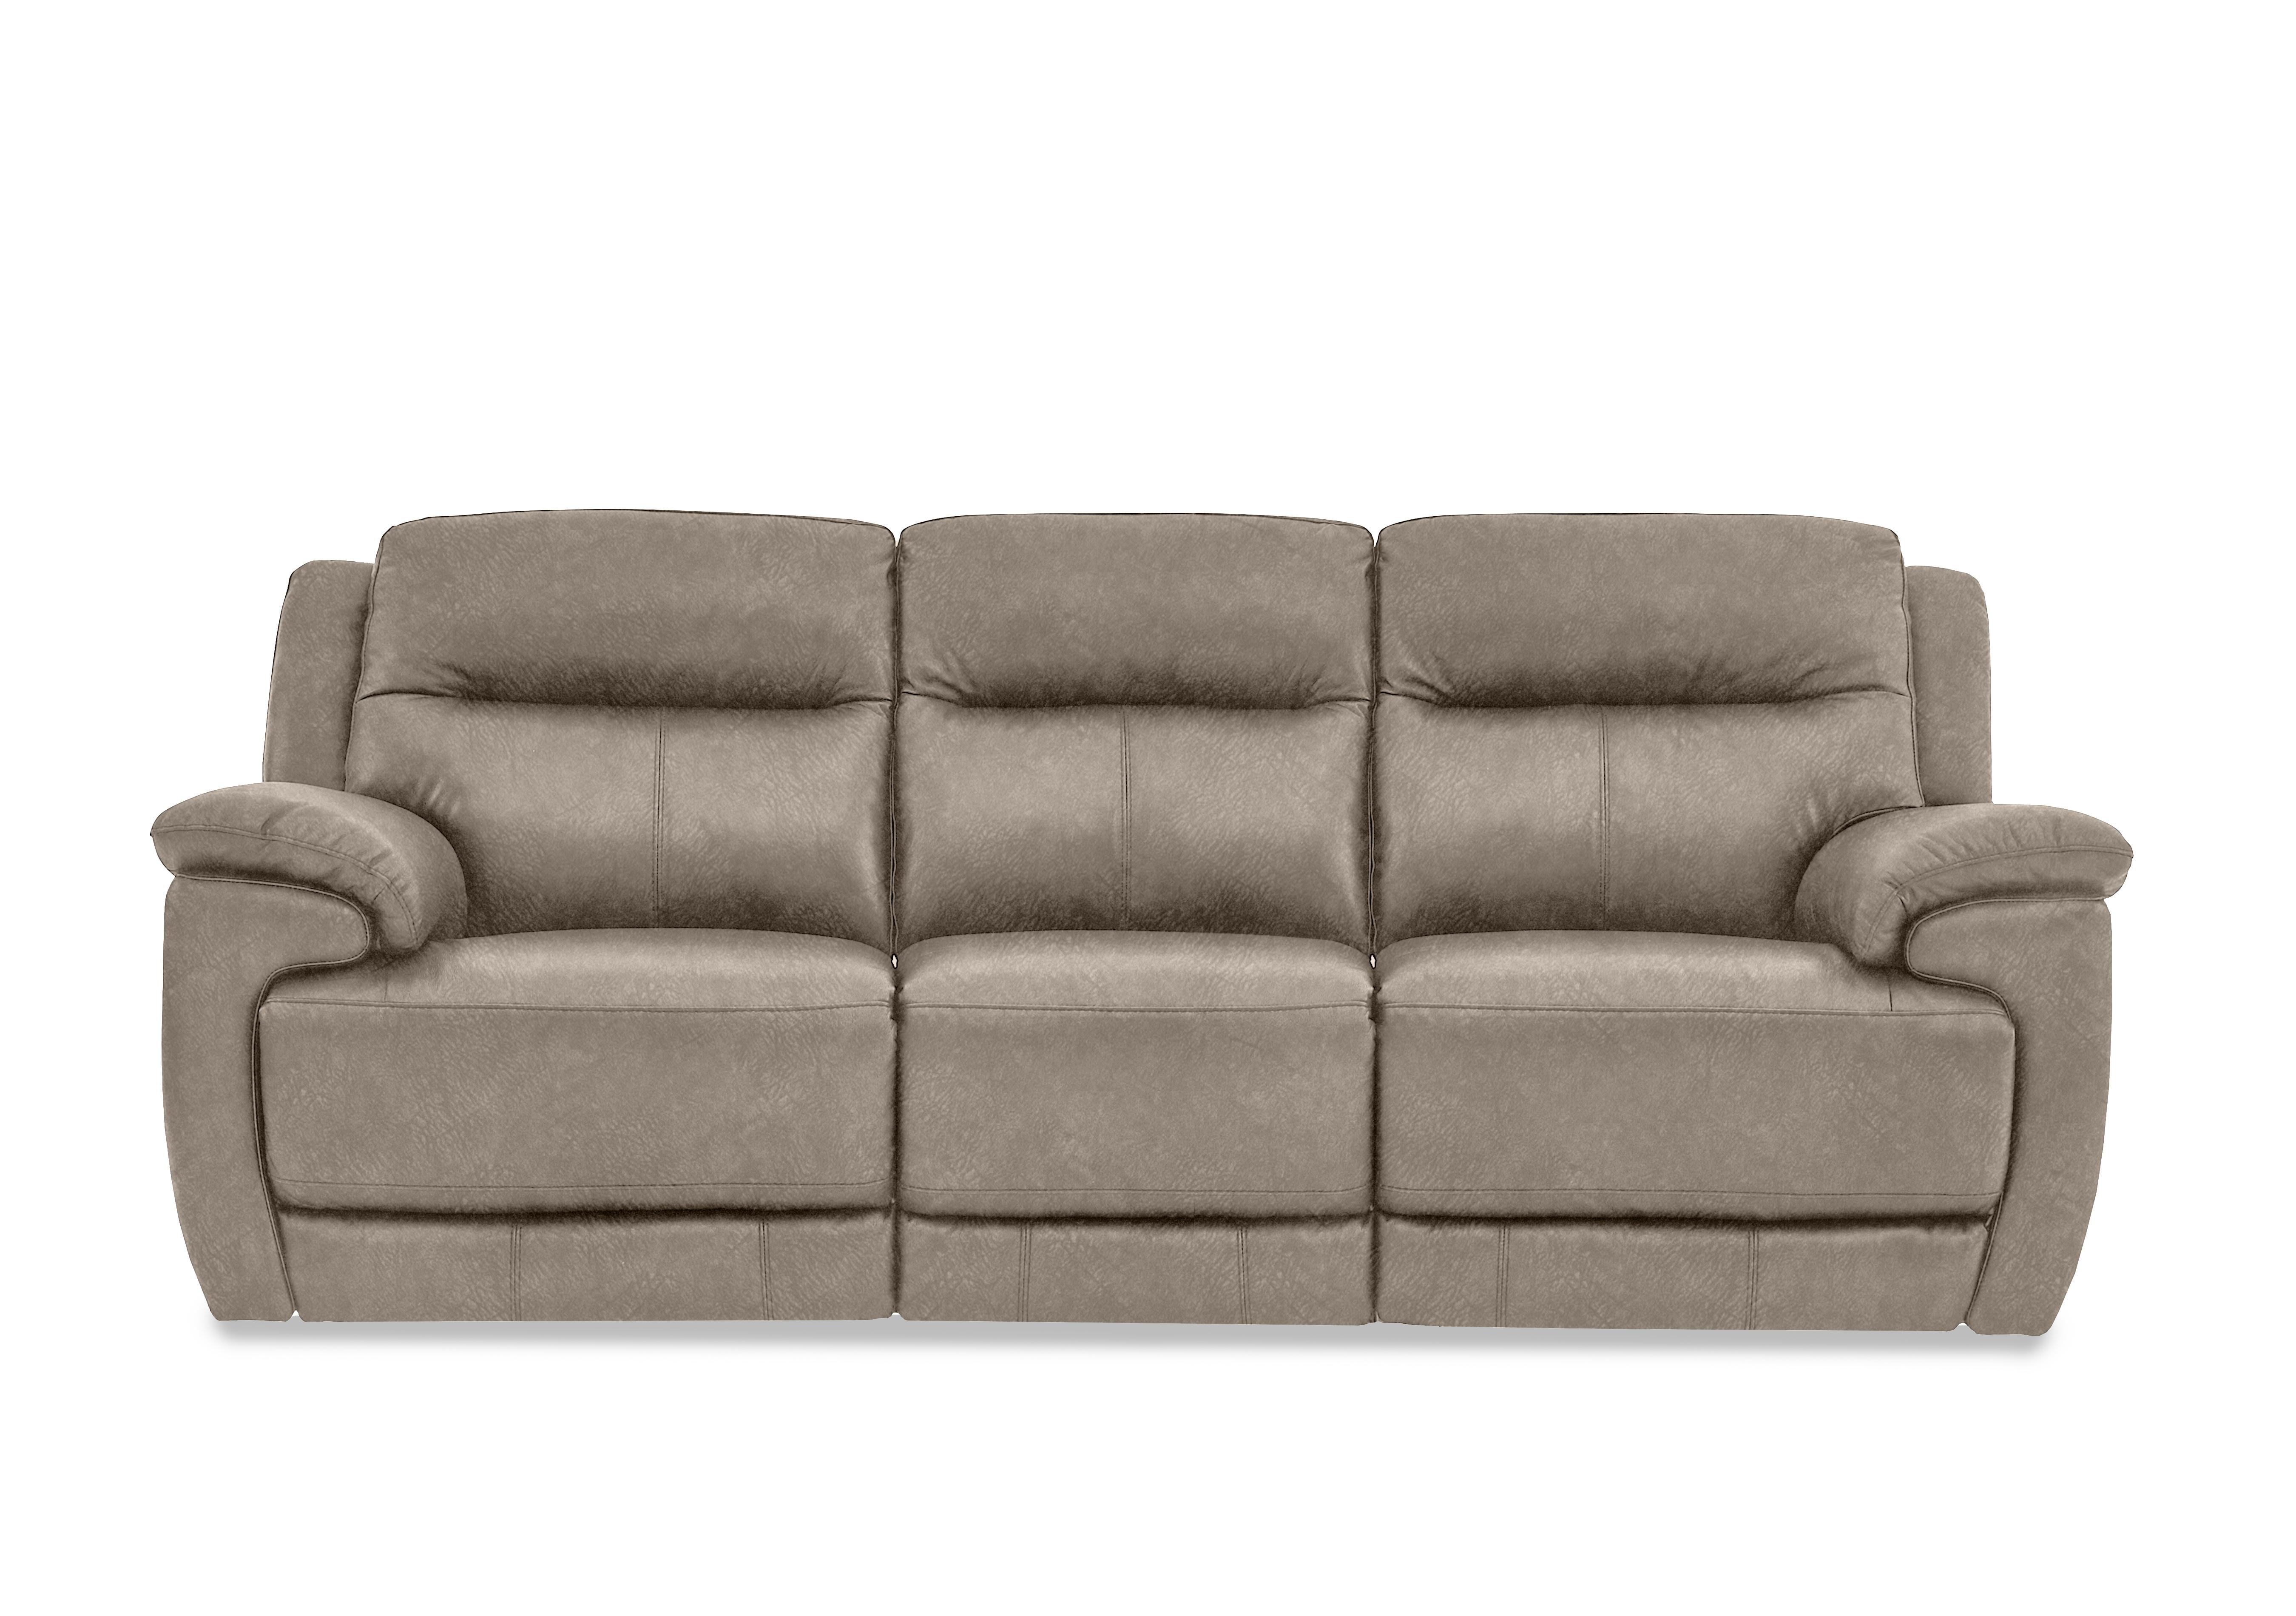 Touch 3 Seater Heavy Duty Fabric Sofa in Bfa-Bnn-R29 Fv1 Mink on Furniture Village